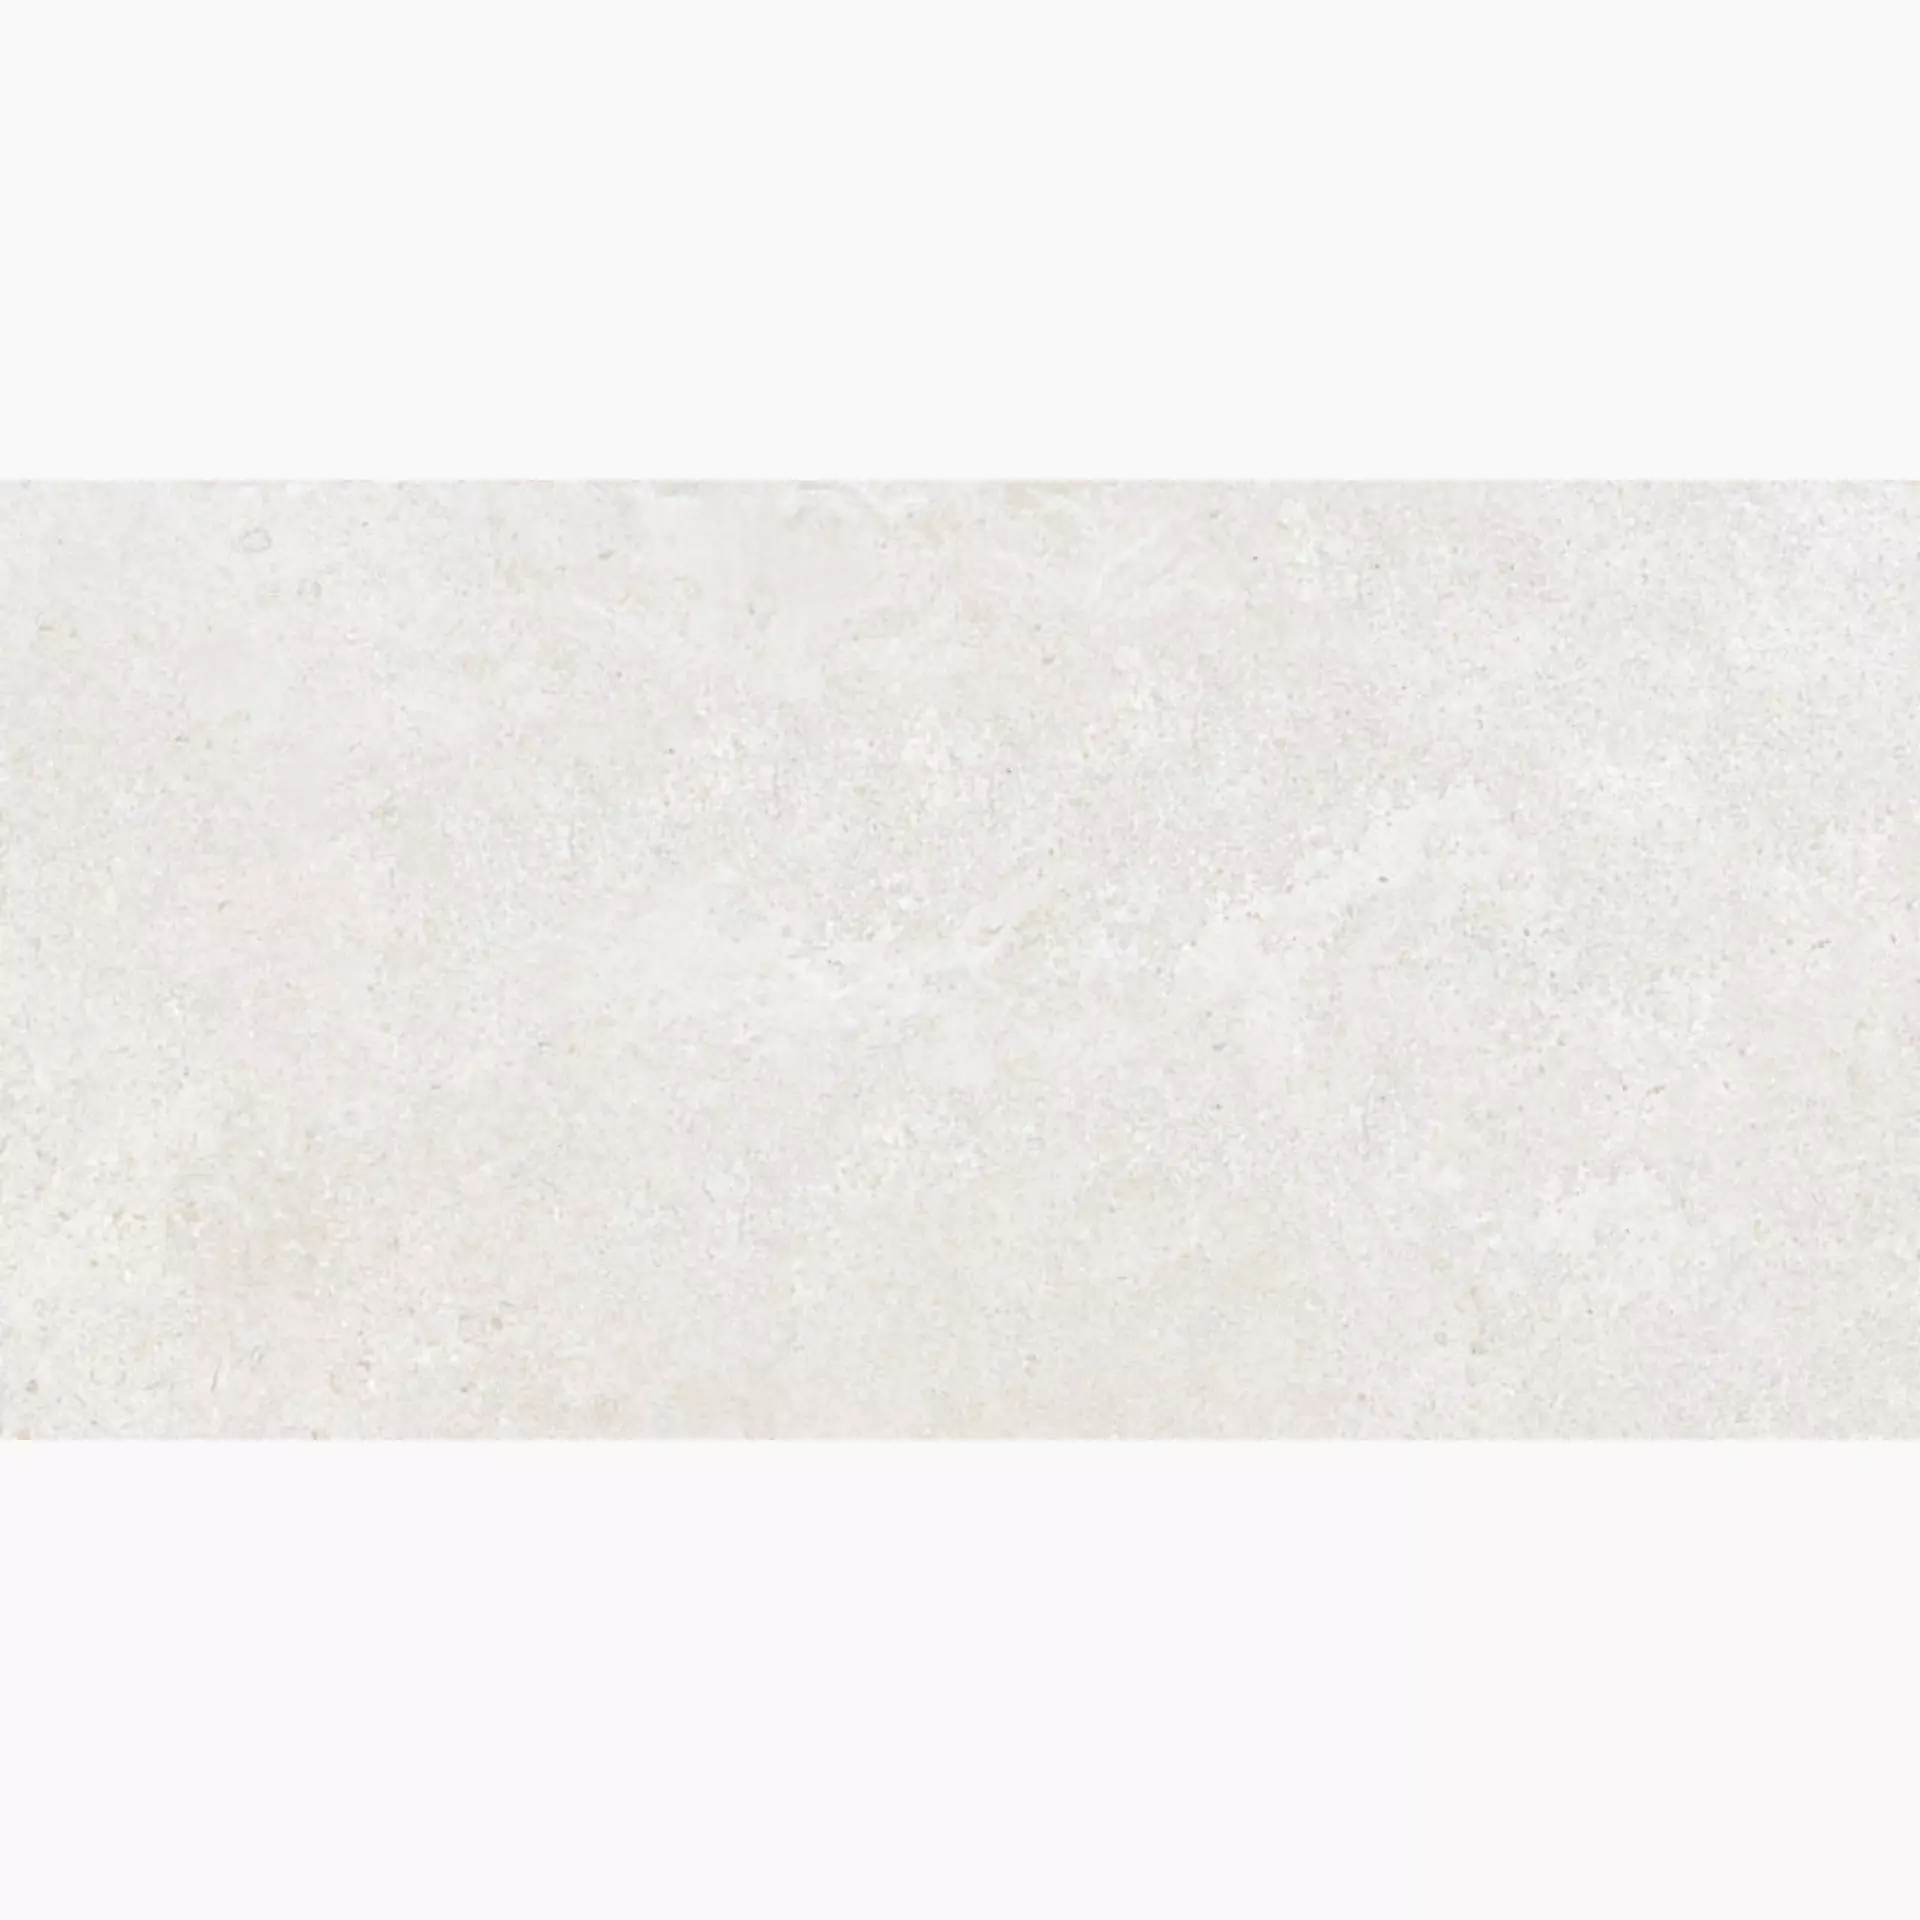 Keope Brystone White Naturale – Matt 44594935 30x60cm rectified 9mm